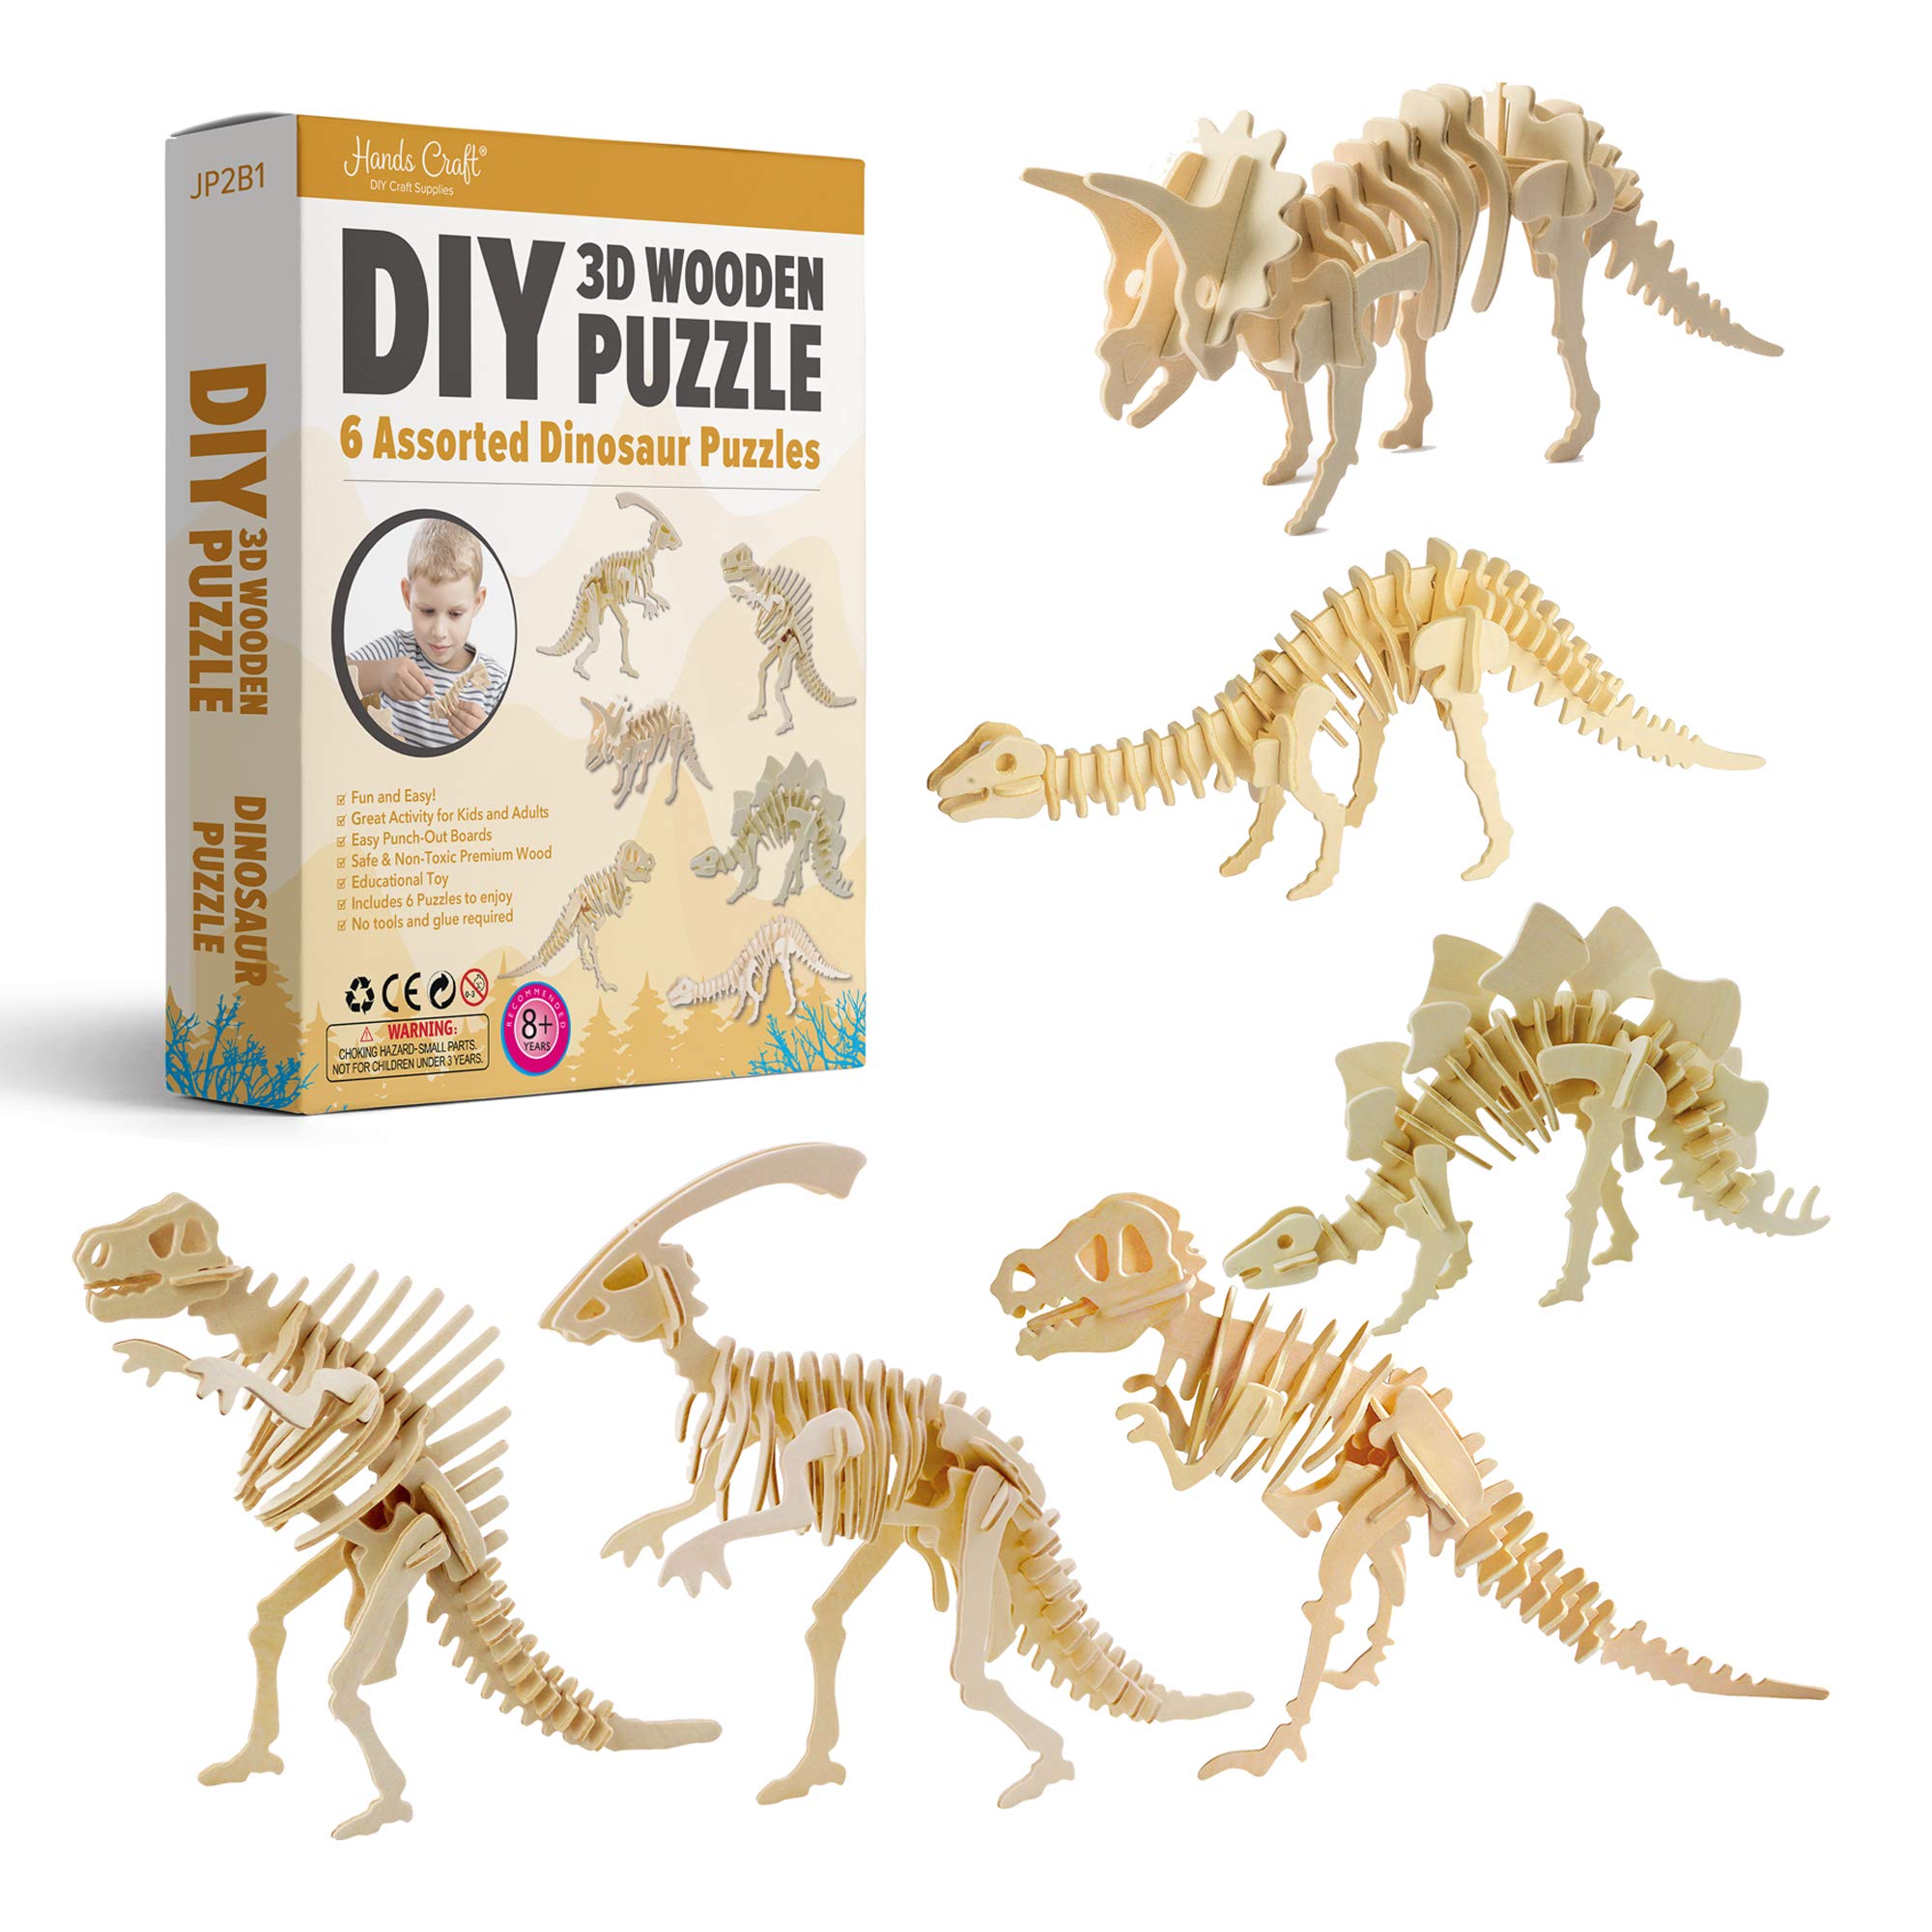 3D Wooden Dinosaurs Bundle Pack Puzzle